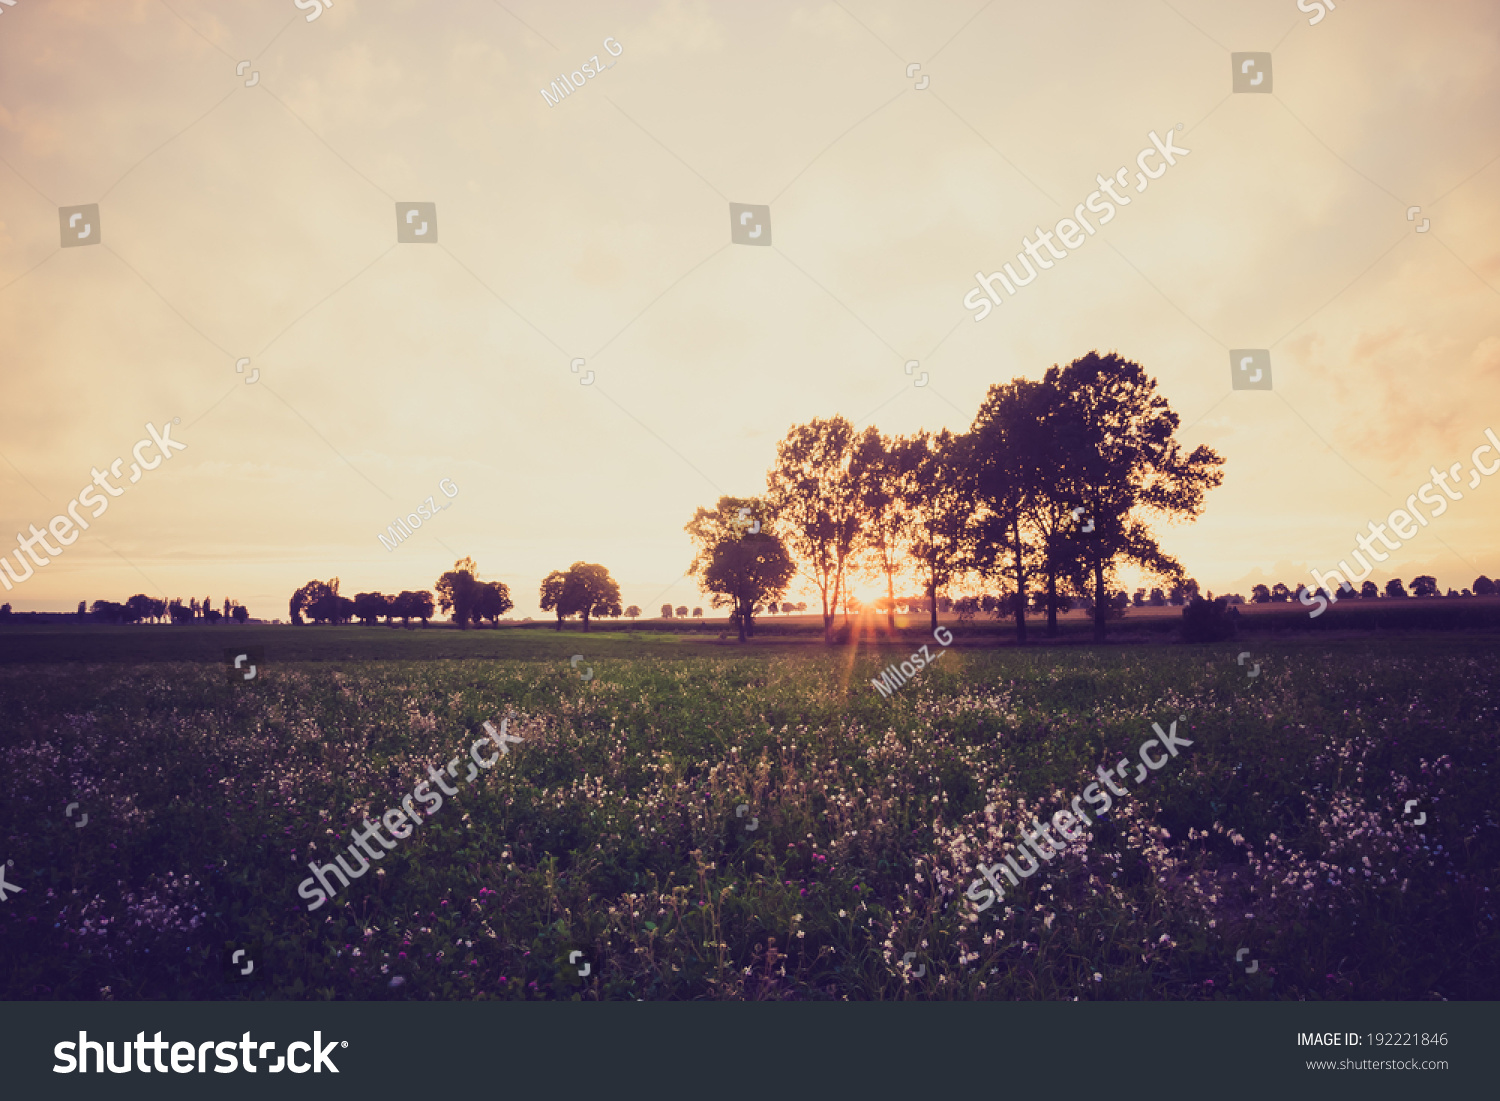 vintage photo of sunset on field. rural landscape #192221846